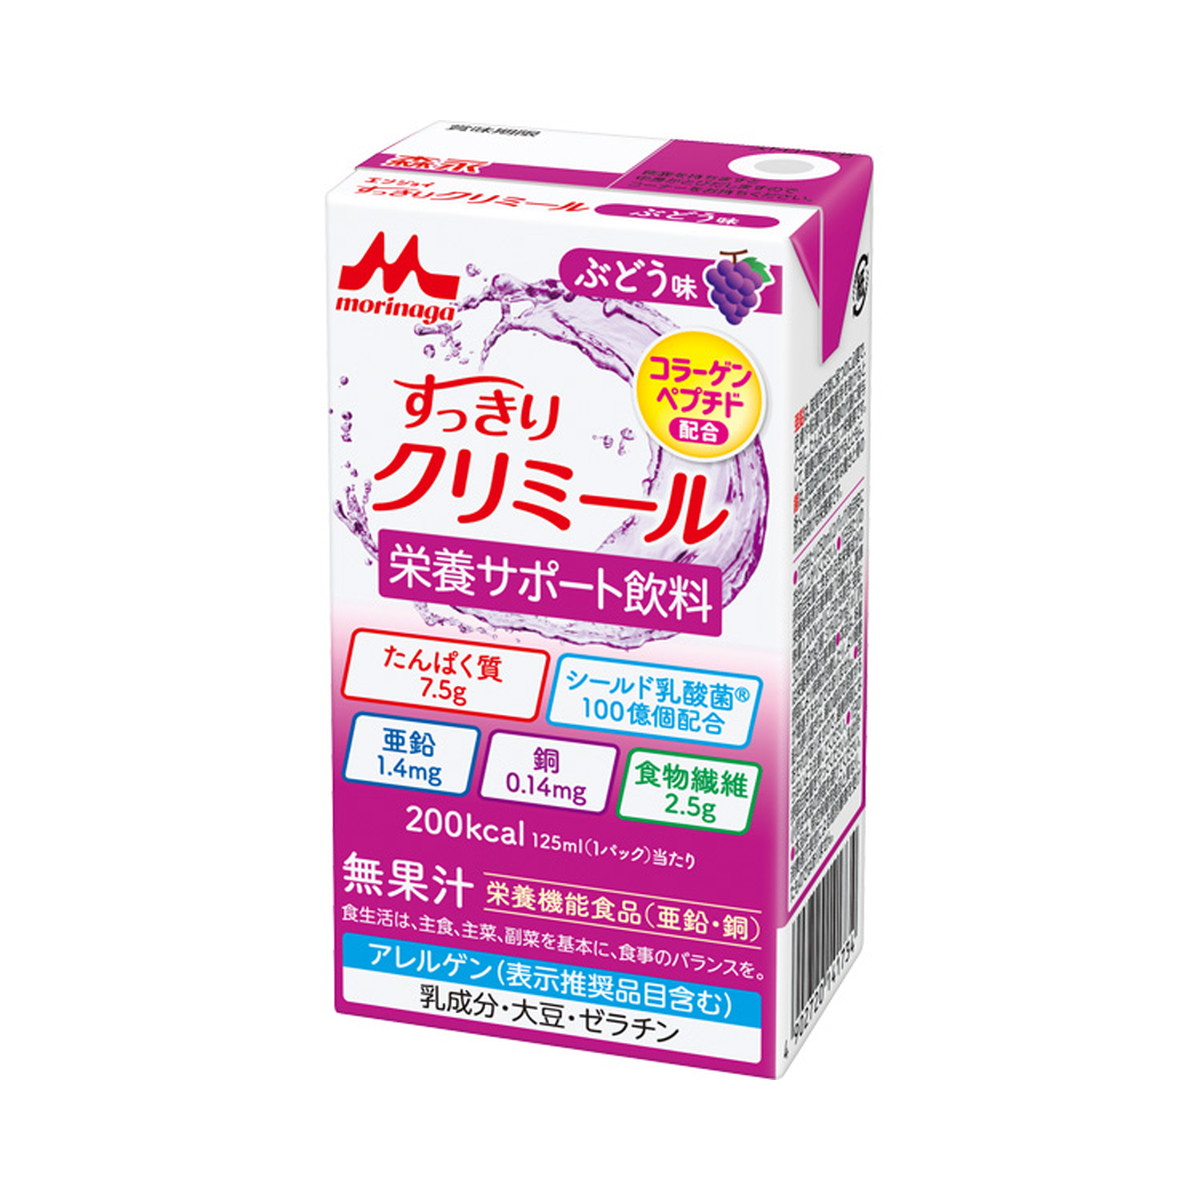 森永乳業 morinaga すっきりクリミール ぶどう味 125ml×1パック クリミール 介護食の商品画像